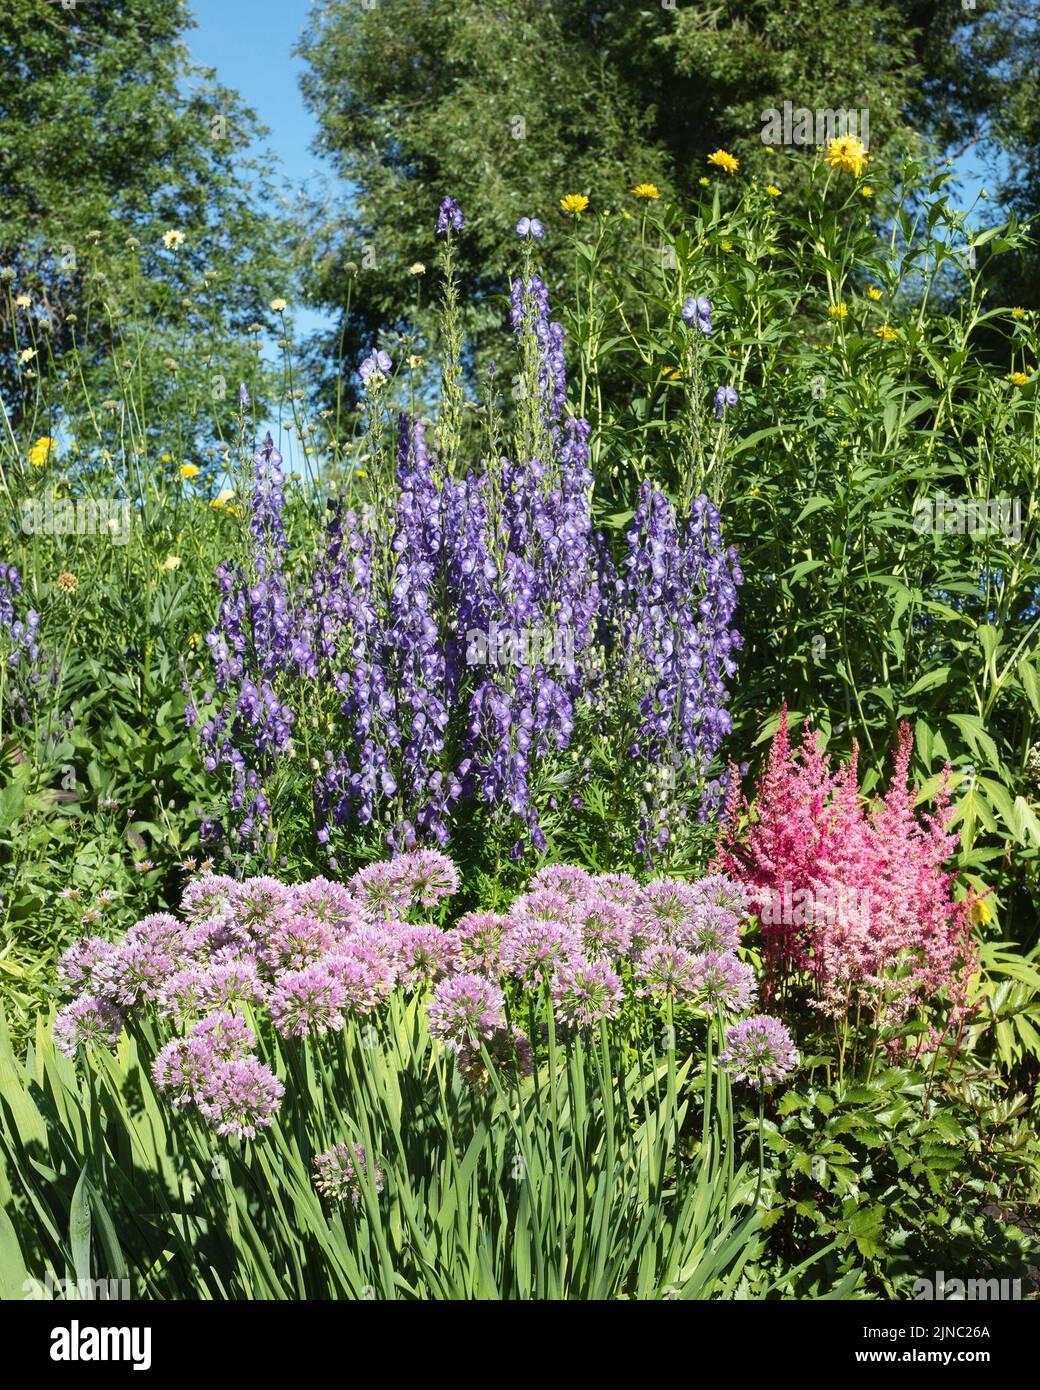 Jardin fleuri dans un parc municipal de quartier en été, Riley Park, Calgary, Alberta, Canada Banque D'Images